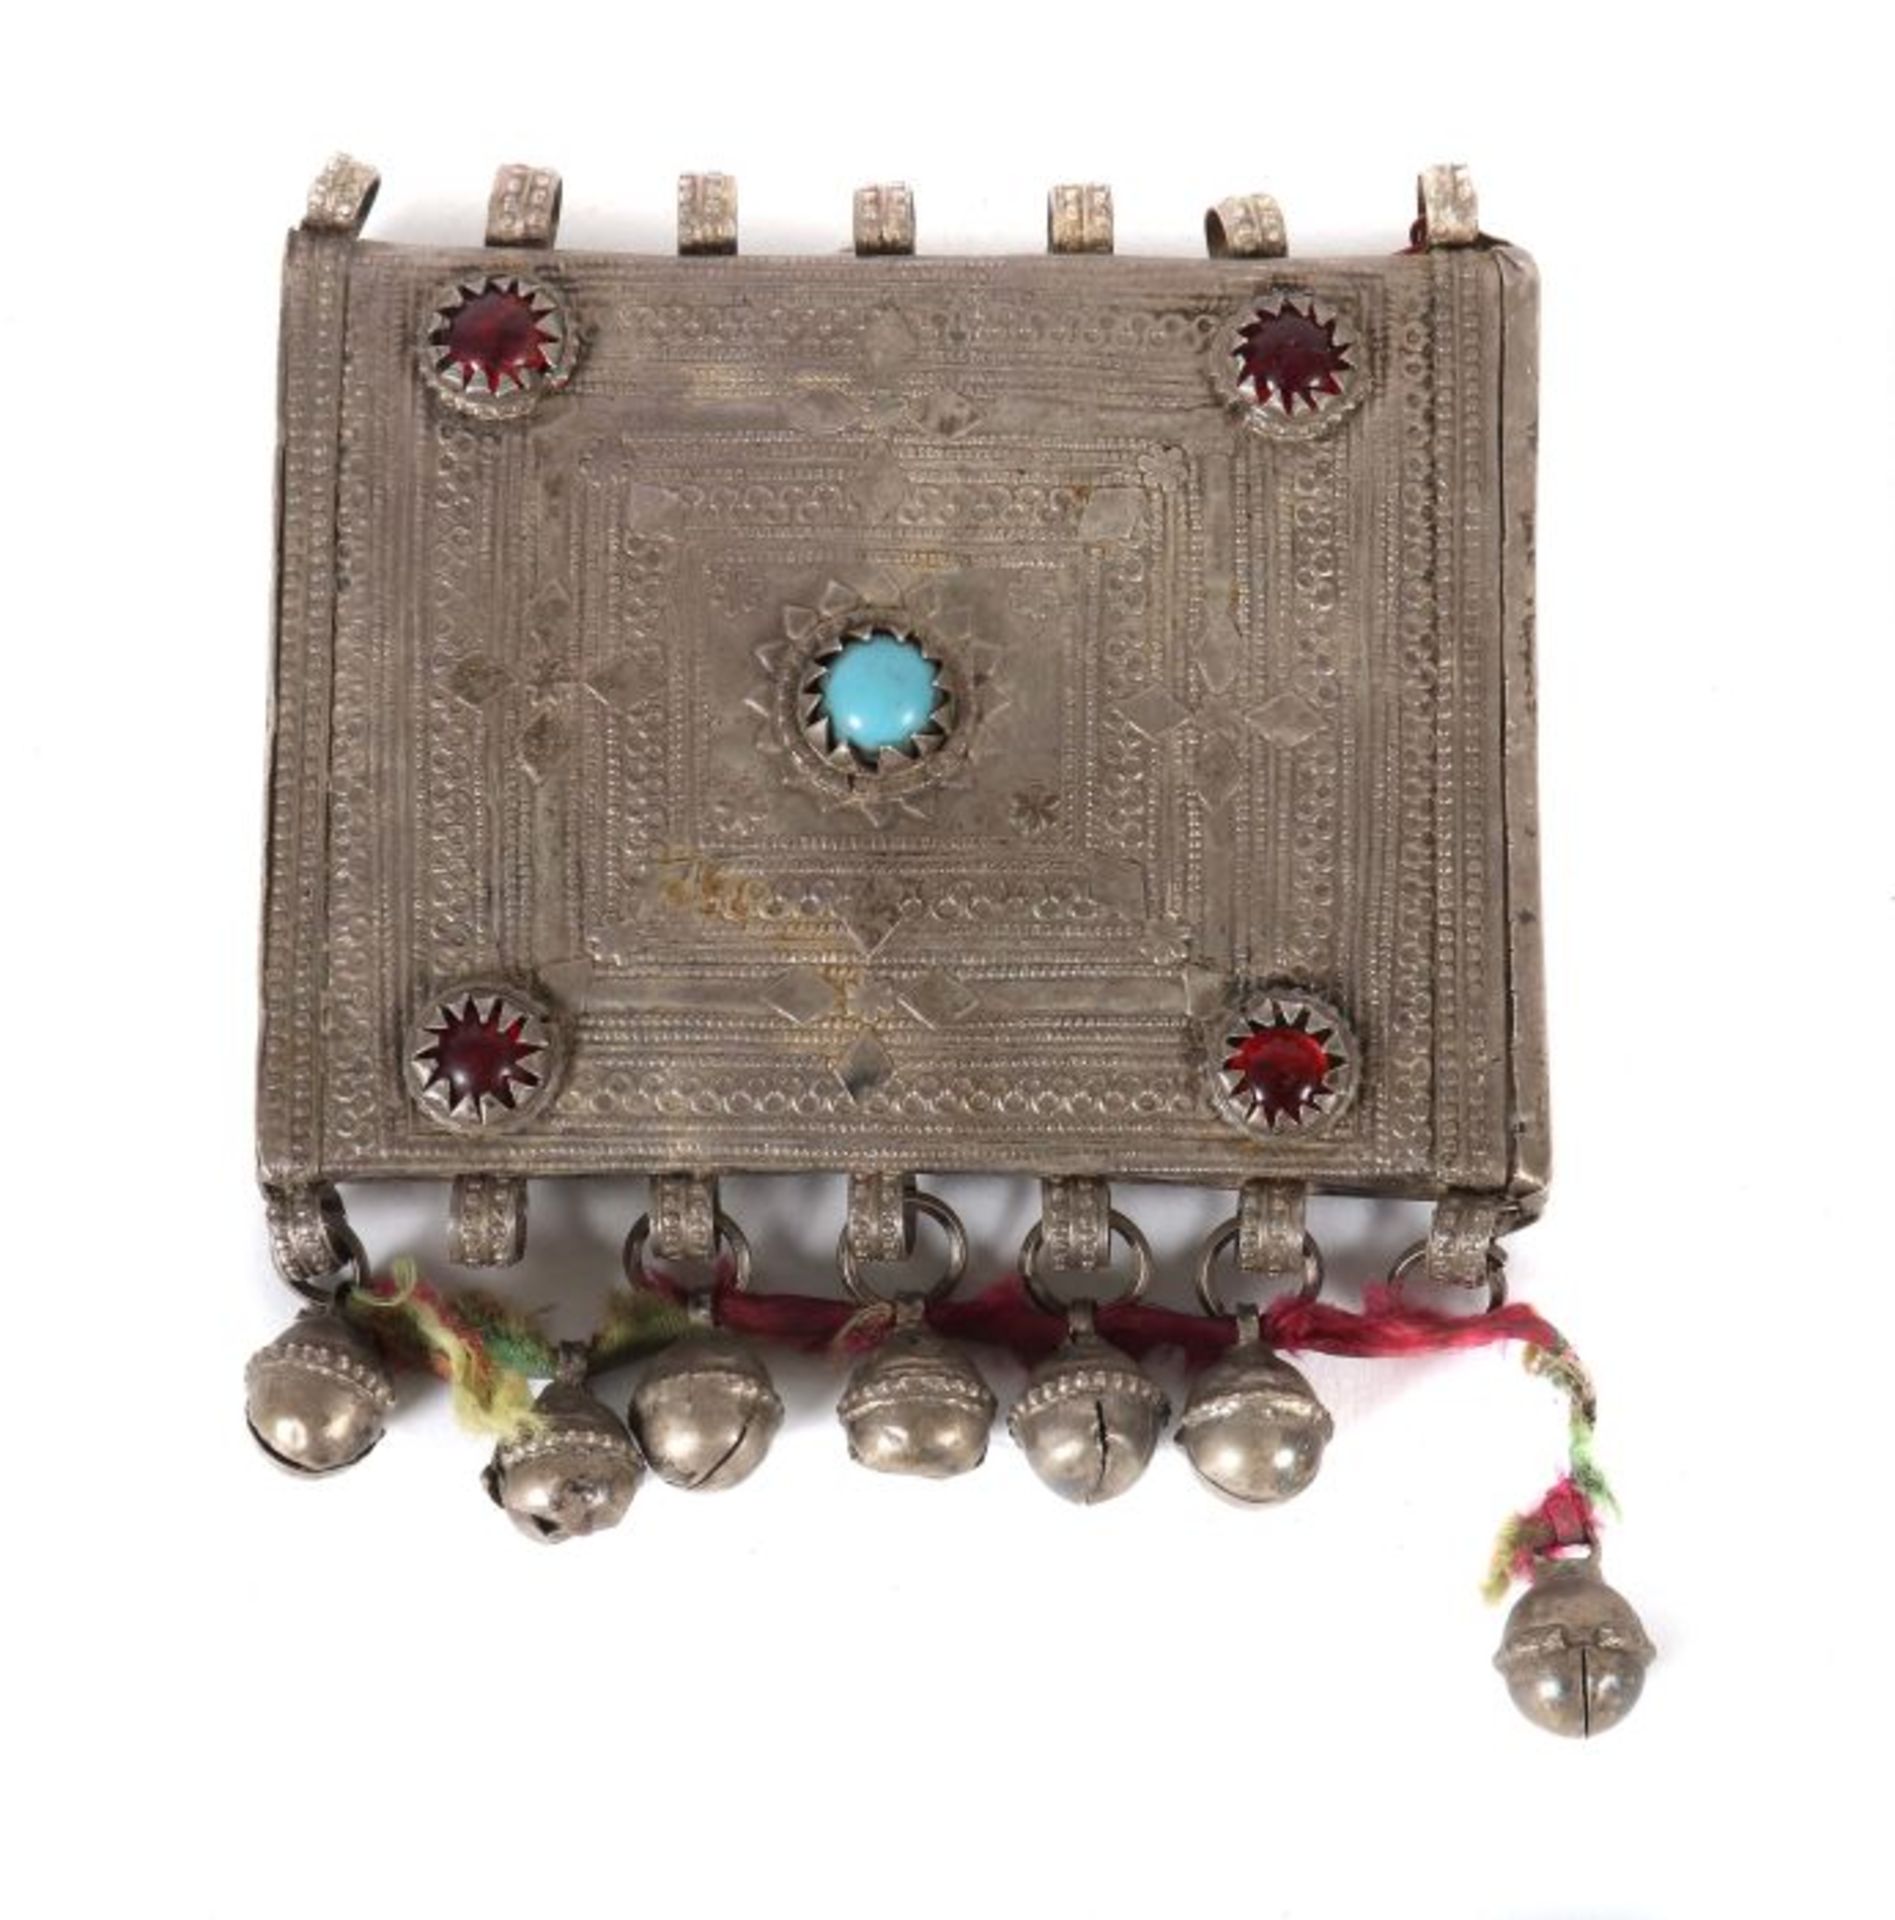 Amulettbehälter Nepal/Turkmenistan, 19./20. Jh, Silber(säuregeprüft), quadratische Form mit leicht